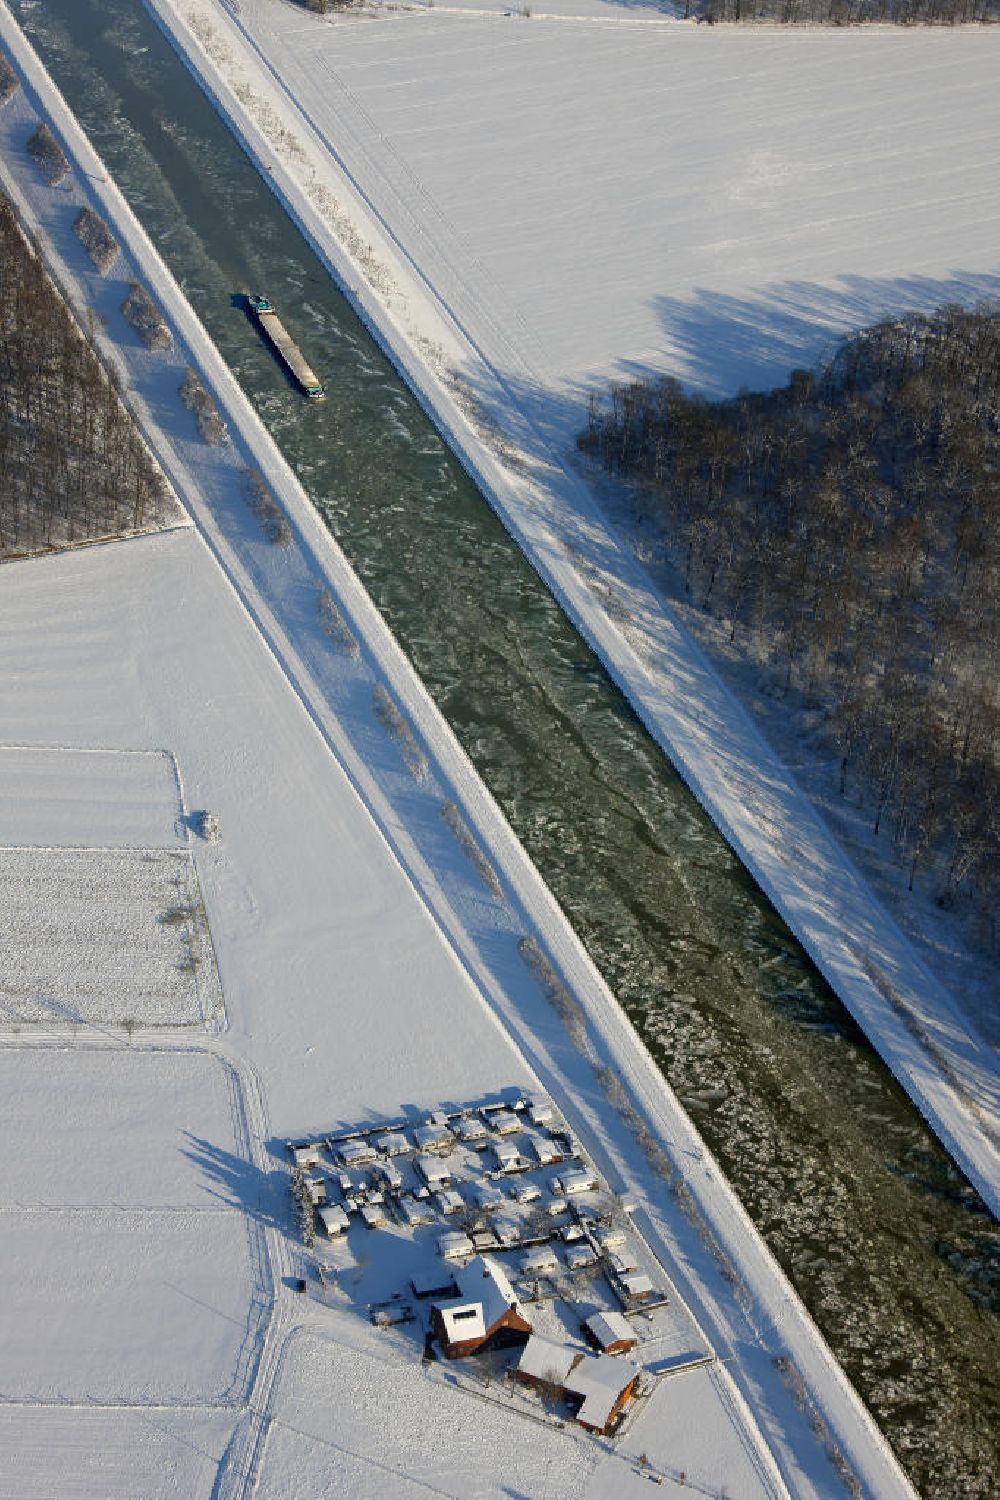 Olfen from above - Binnenschiffahrt auf dem winterlich verschneiten und vereisten Dortmund-Ems-Kanal bei Olfen. Shipping on the snow-covered and icy Dortmund-Ems Canal